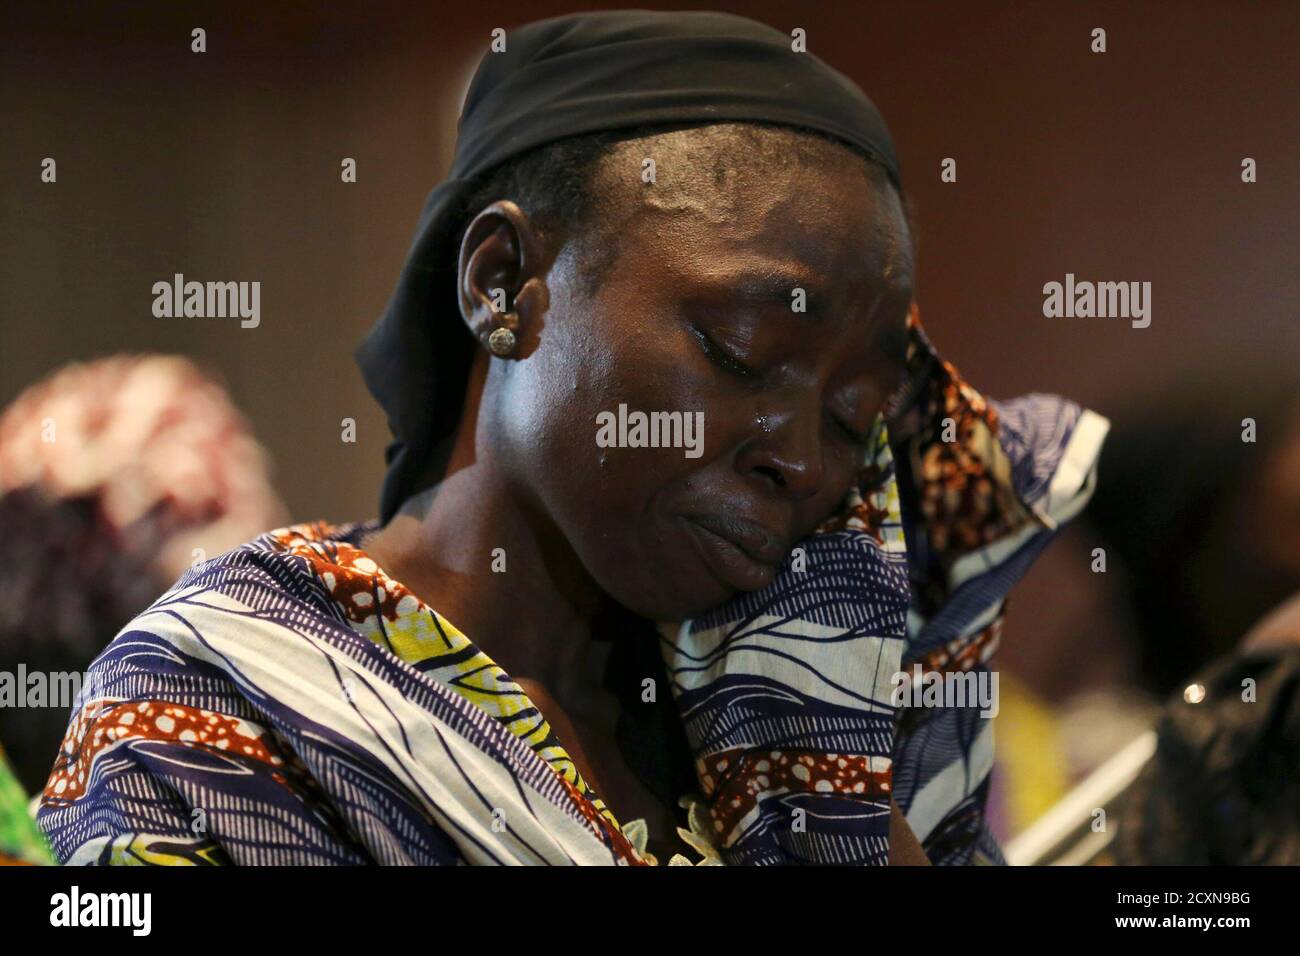 Hanatu Dauda, madre de una de las más de 200 niñas secuestradas en la remota aldea de Chibok, llora mientras reacciona durante una conferencia de prensa sobre las niñas en Lagos el 5 de junio de 2014. Varias madres de niñas que se estaban celebrando en?Nigeria?por el grupo militante?Boko Haram?se reunieron en?Lagos?el jueves, donde organizaciones no gubernamentales y un congresista del estado de EE.UU. Les ofrecieron terapia y apoyo. Boko Haram, un grupo militante que realizó una campaña para crear un estado islámico en la región, secuestró a 276 niñas de una escuela en Chibok el 14 de abril. REUTERS/Akintunde Akinleye (NIGERIA - Tags: DERECHO DEL CRIMEN POLÍTICA RELIGIÓN CIVI Foto de stock